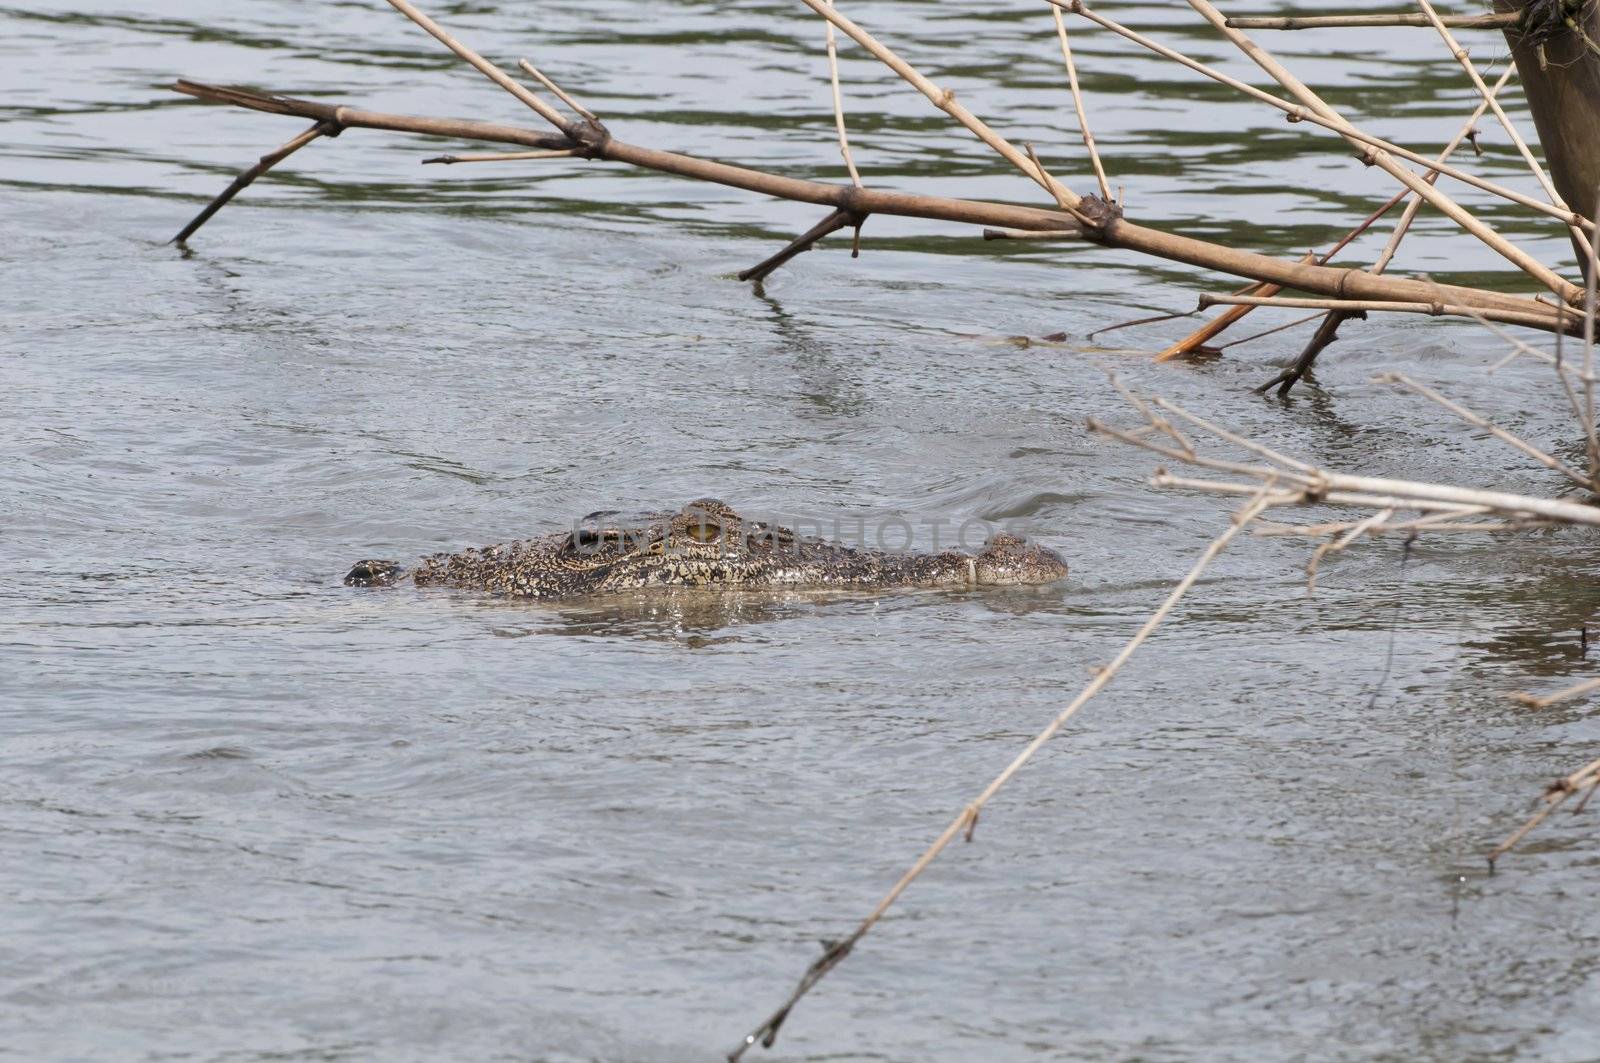 Wild crocodile in a river by iryna_rasko